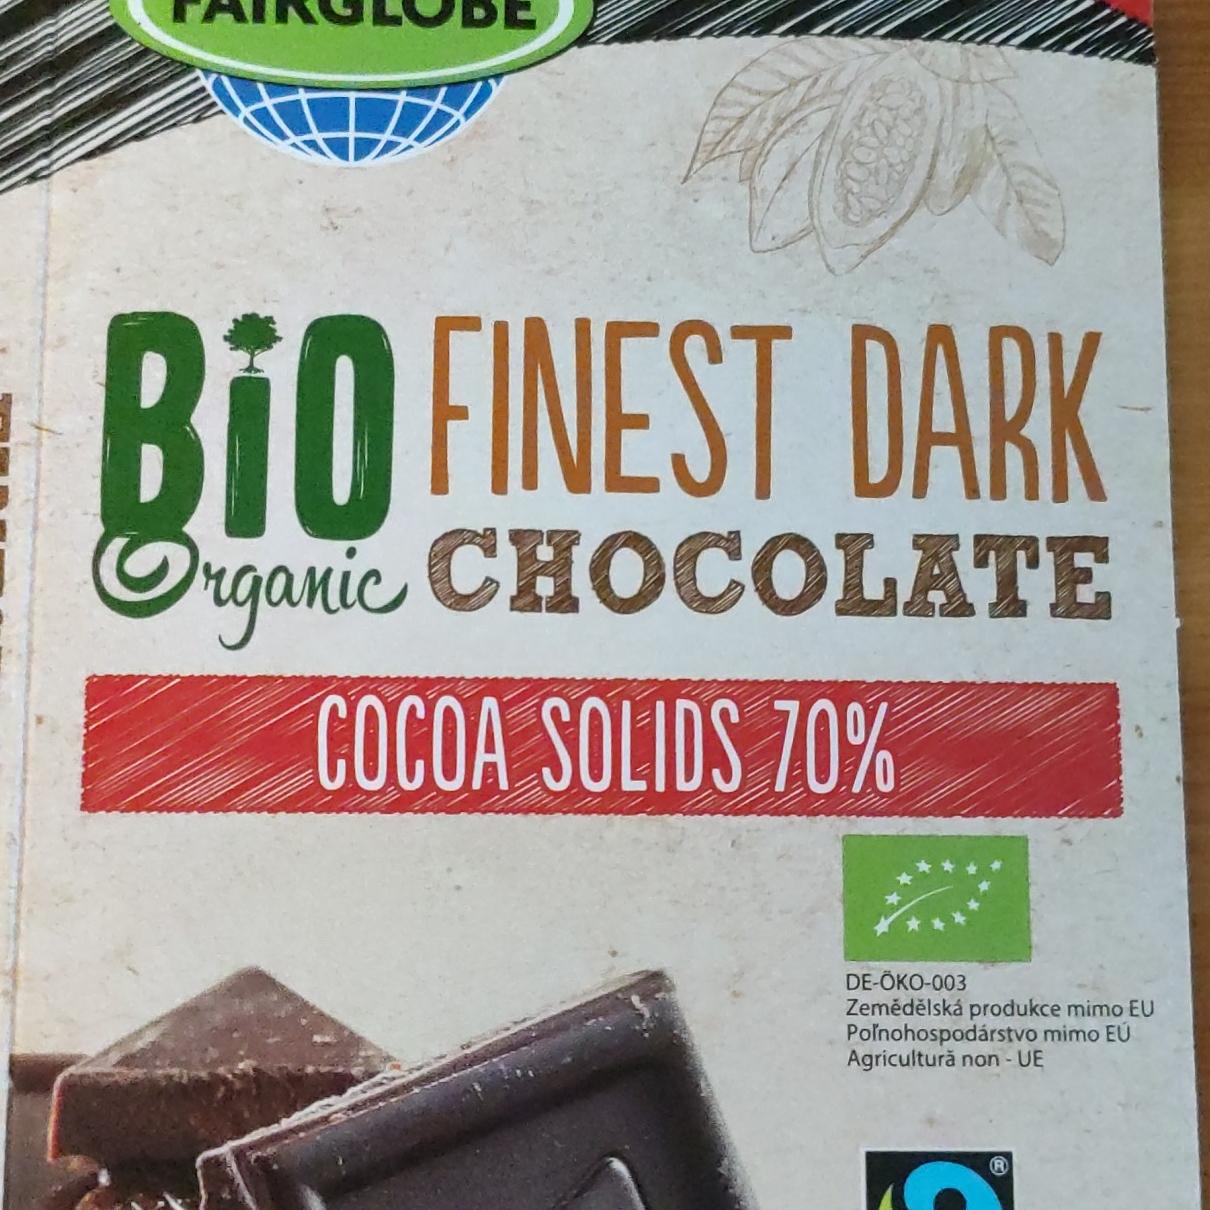 Fotografie - BIO Organic Dark Chocolate cocoa solids 70% Fairglobe